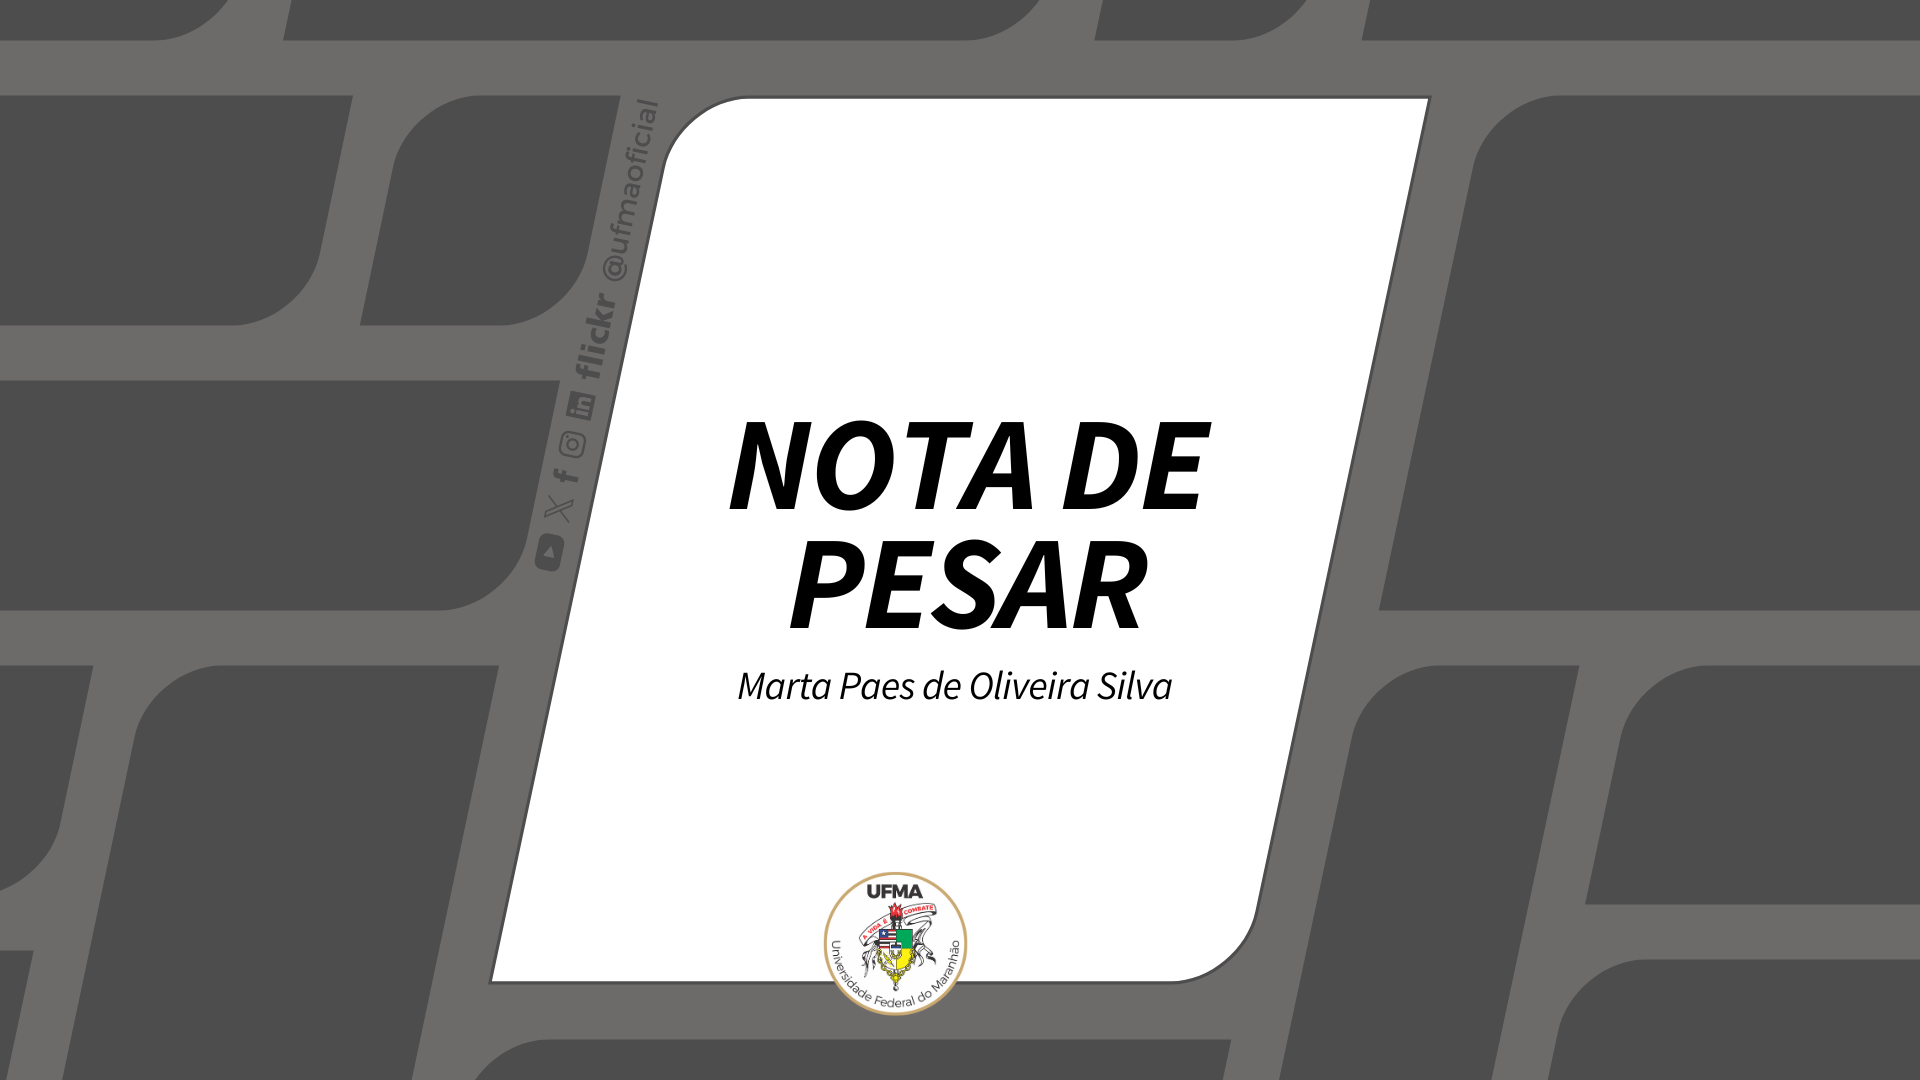 NOTA DE PESAR - Marta Paes de Oliveira Silva